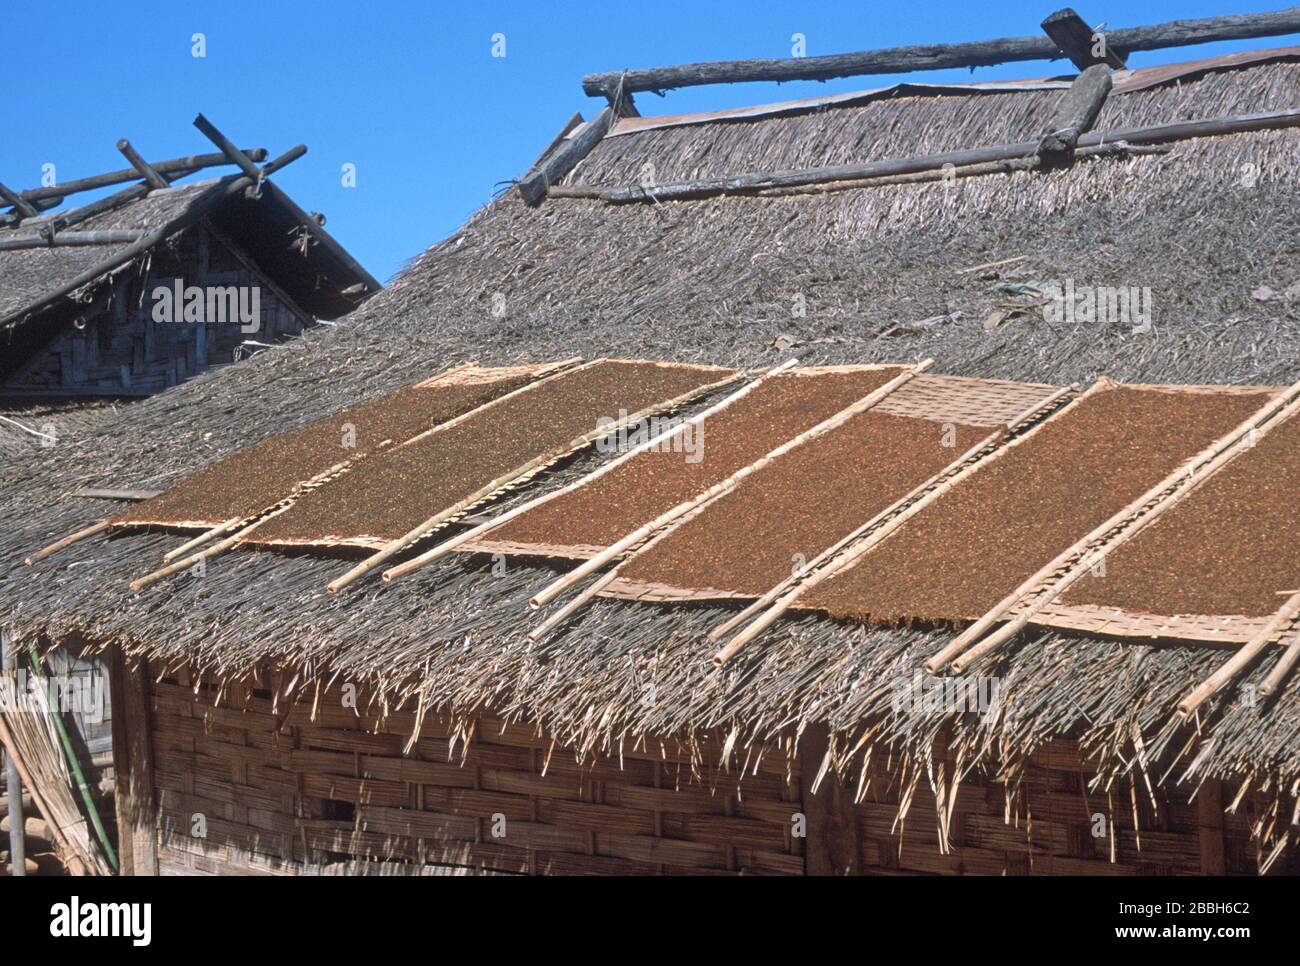 Croustillant de mauvaises herbes du Mékong séchant sur des cadres de bambou / de pointe sur les toits de chaume des maisons à Luang Prabang, Laos. L'herbe lao ou Kaipen / Kaiphaen / Khai Pene est une collation populaire, récoltée à partir du lit de la rivière. La ville de Luang Prabang est classée au patrimoine mondial de l'UNESCO. Banque D'Images